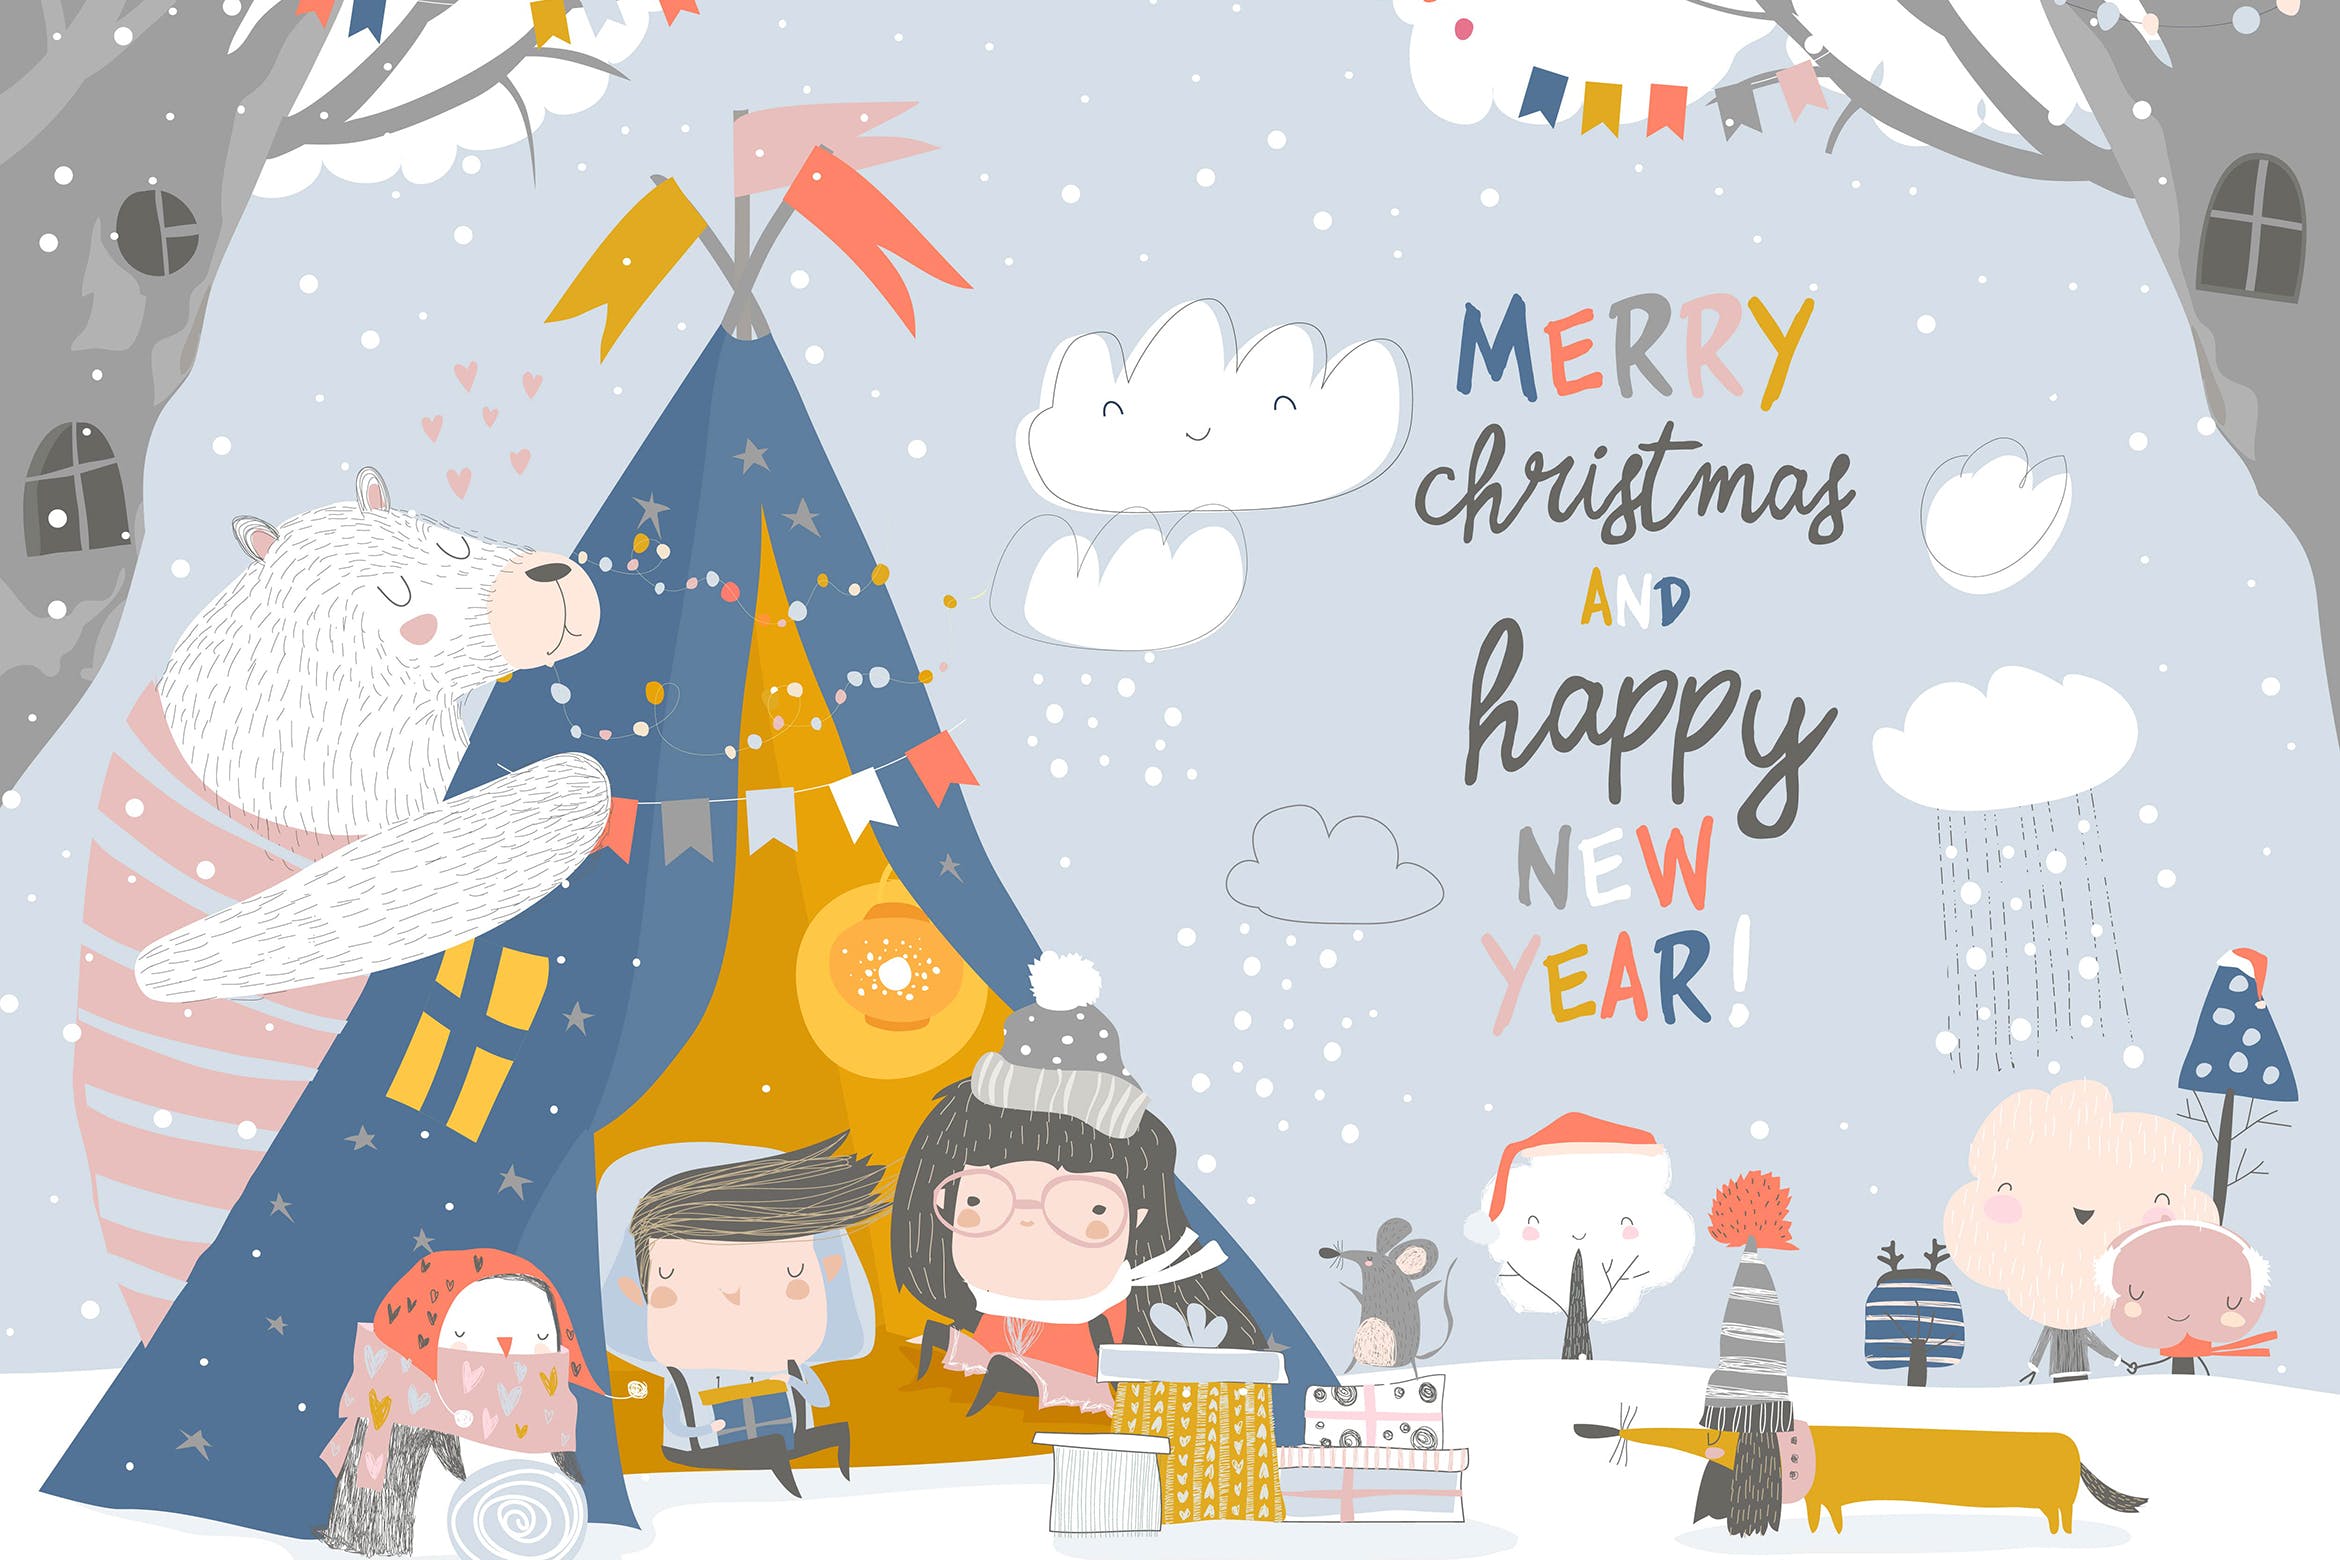 儿童与动物庆祝圣诞节场景矢量手绘插画素材 Kids celebrating Christmas with animals in a teepe插图